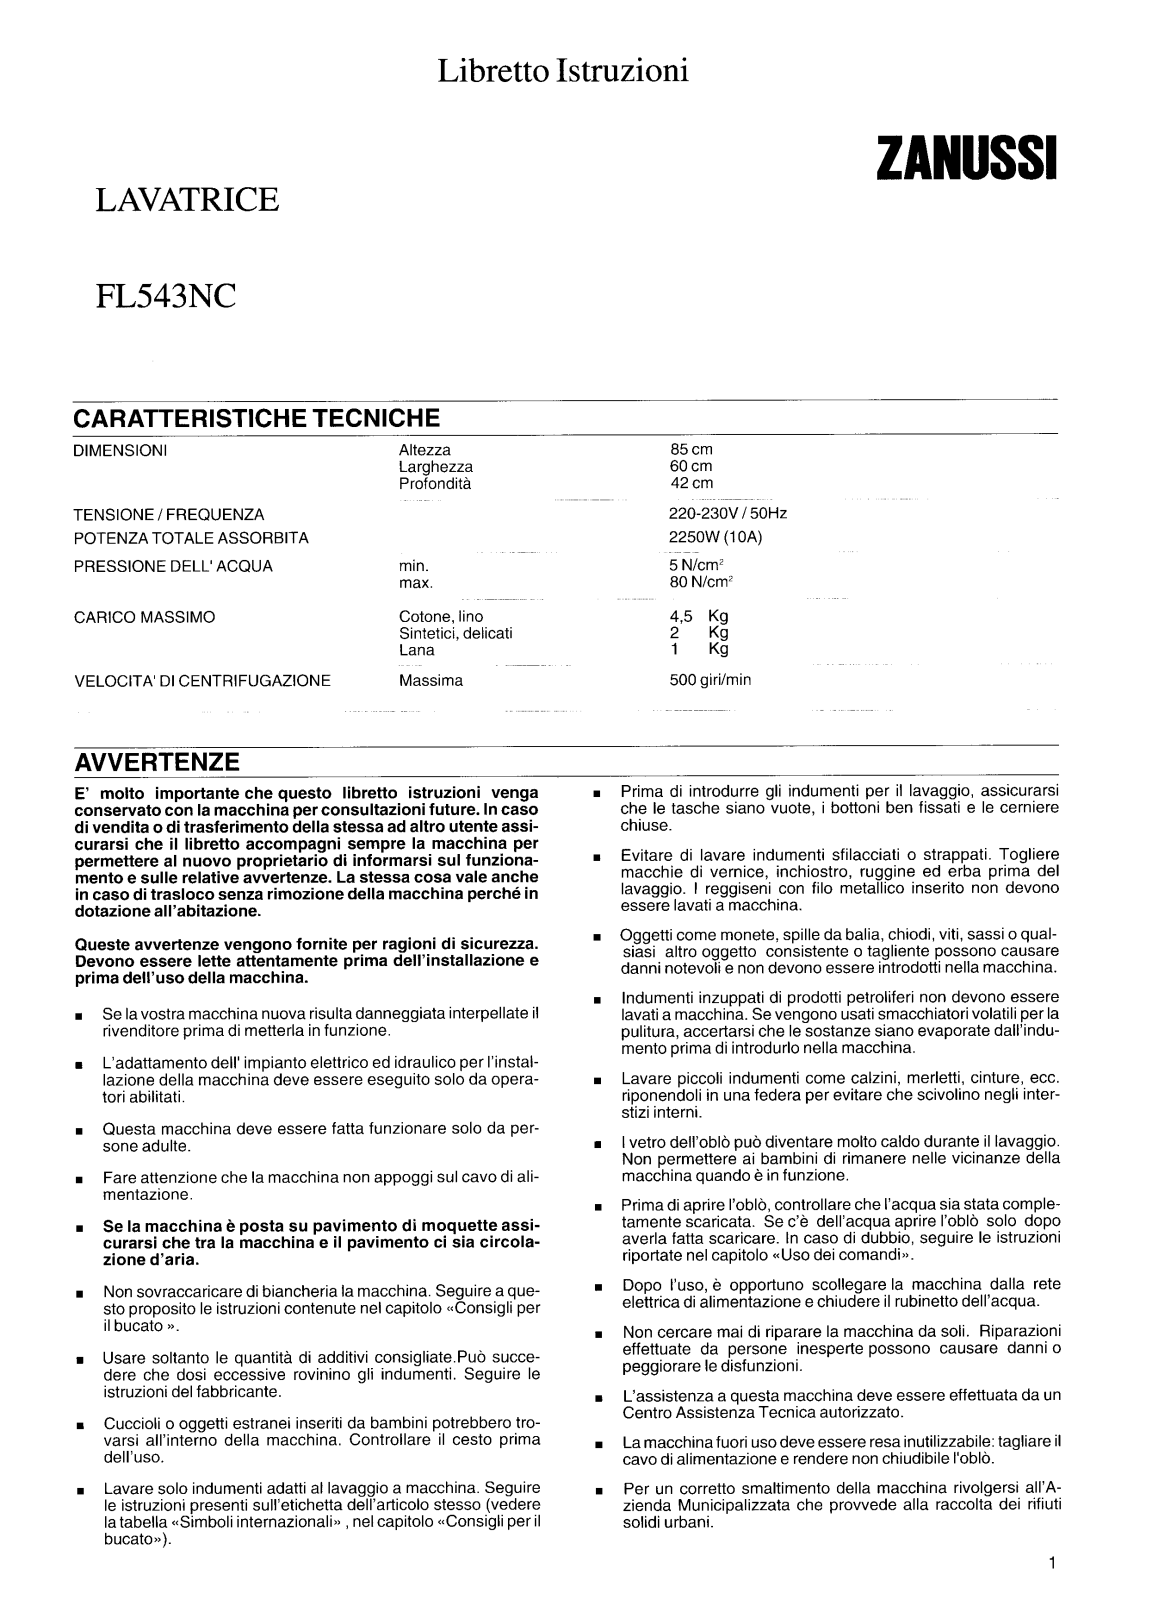 Zanussi FL543NC User Manual